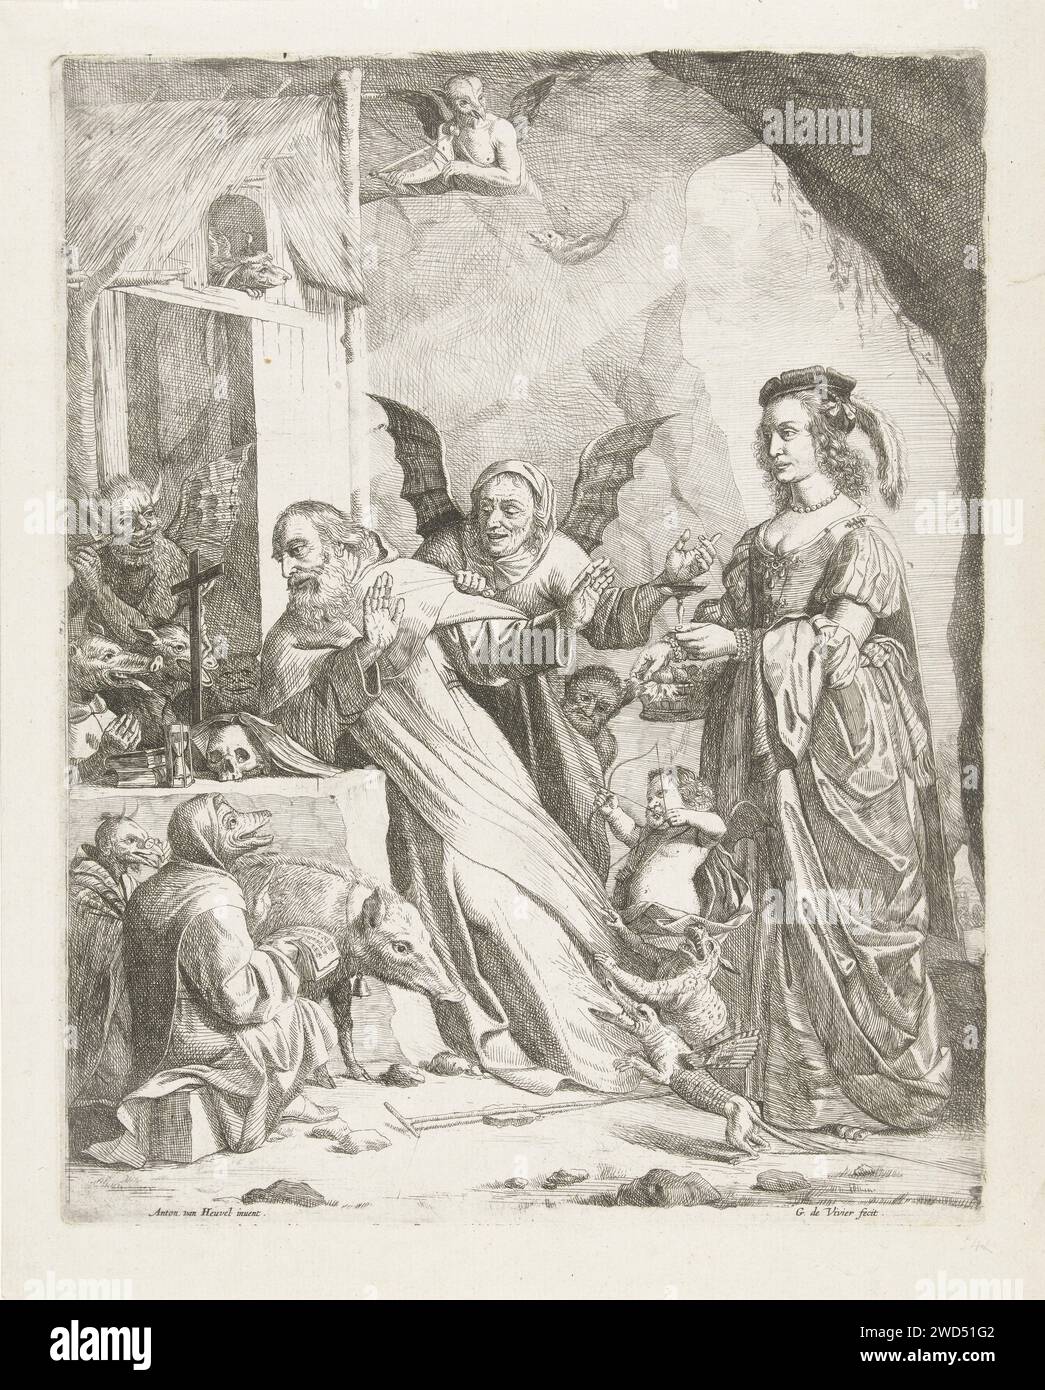 La tentation de St. Antonius, Guillaume Duvivier, d'après Antoine van den Heuvel, c. 1660 - c. 1670 imprimer St. Antonius est agenouillé pour une pierre d'autel sur laquelle un sablier, un sablier, un crâne et une pile de livres. Le diable et les êtres monstrueux le tirent sur son tapis et l'attaquent de toutes sortes de façons. Pour lui le cochon. Derrière lui une dame magnifiquement habillée qui lui offre un verre de vin. Une vieille femme aux ailes du diable tente de le séduire pour le regarder. Au sommet de la grotte un diable volant qui joue un kakebeen. Tentations de gravure sur papier du sud des pays-Bas de St. Antony Abbot Banque D'Images